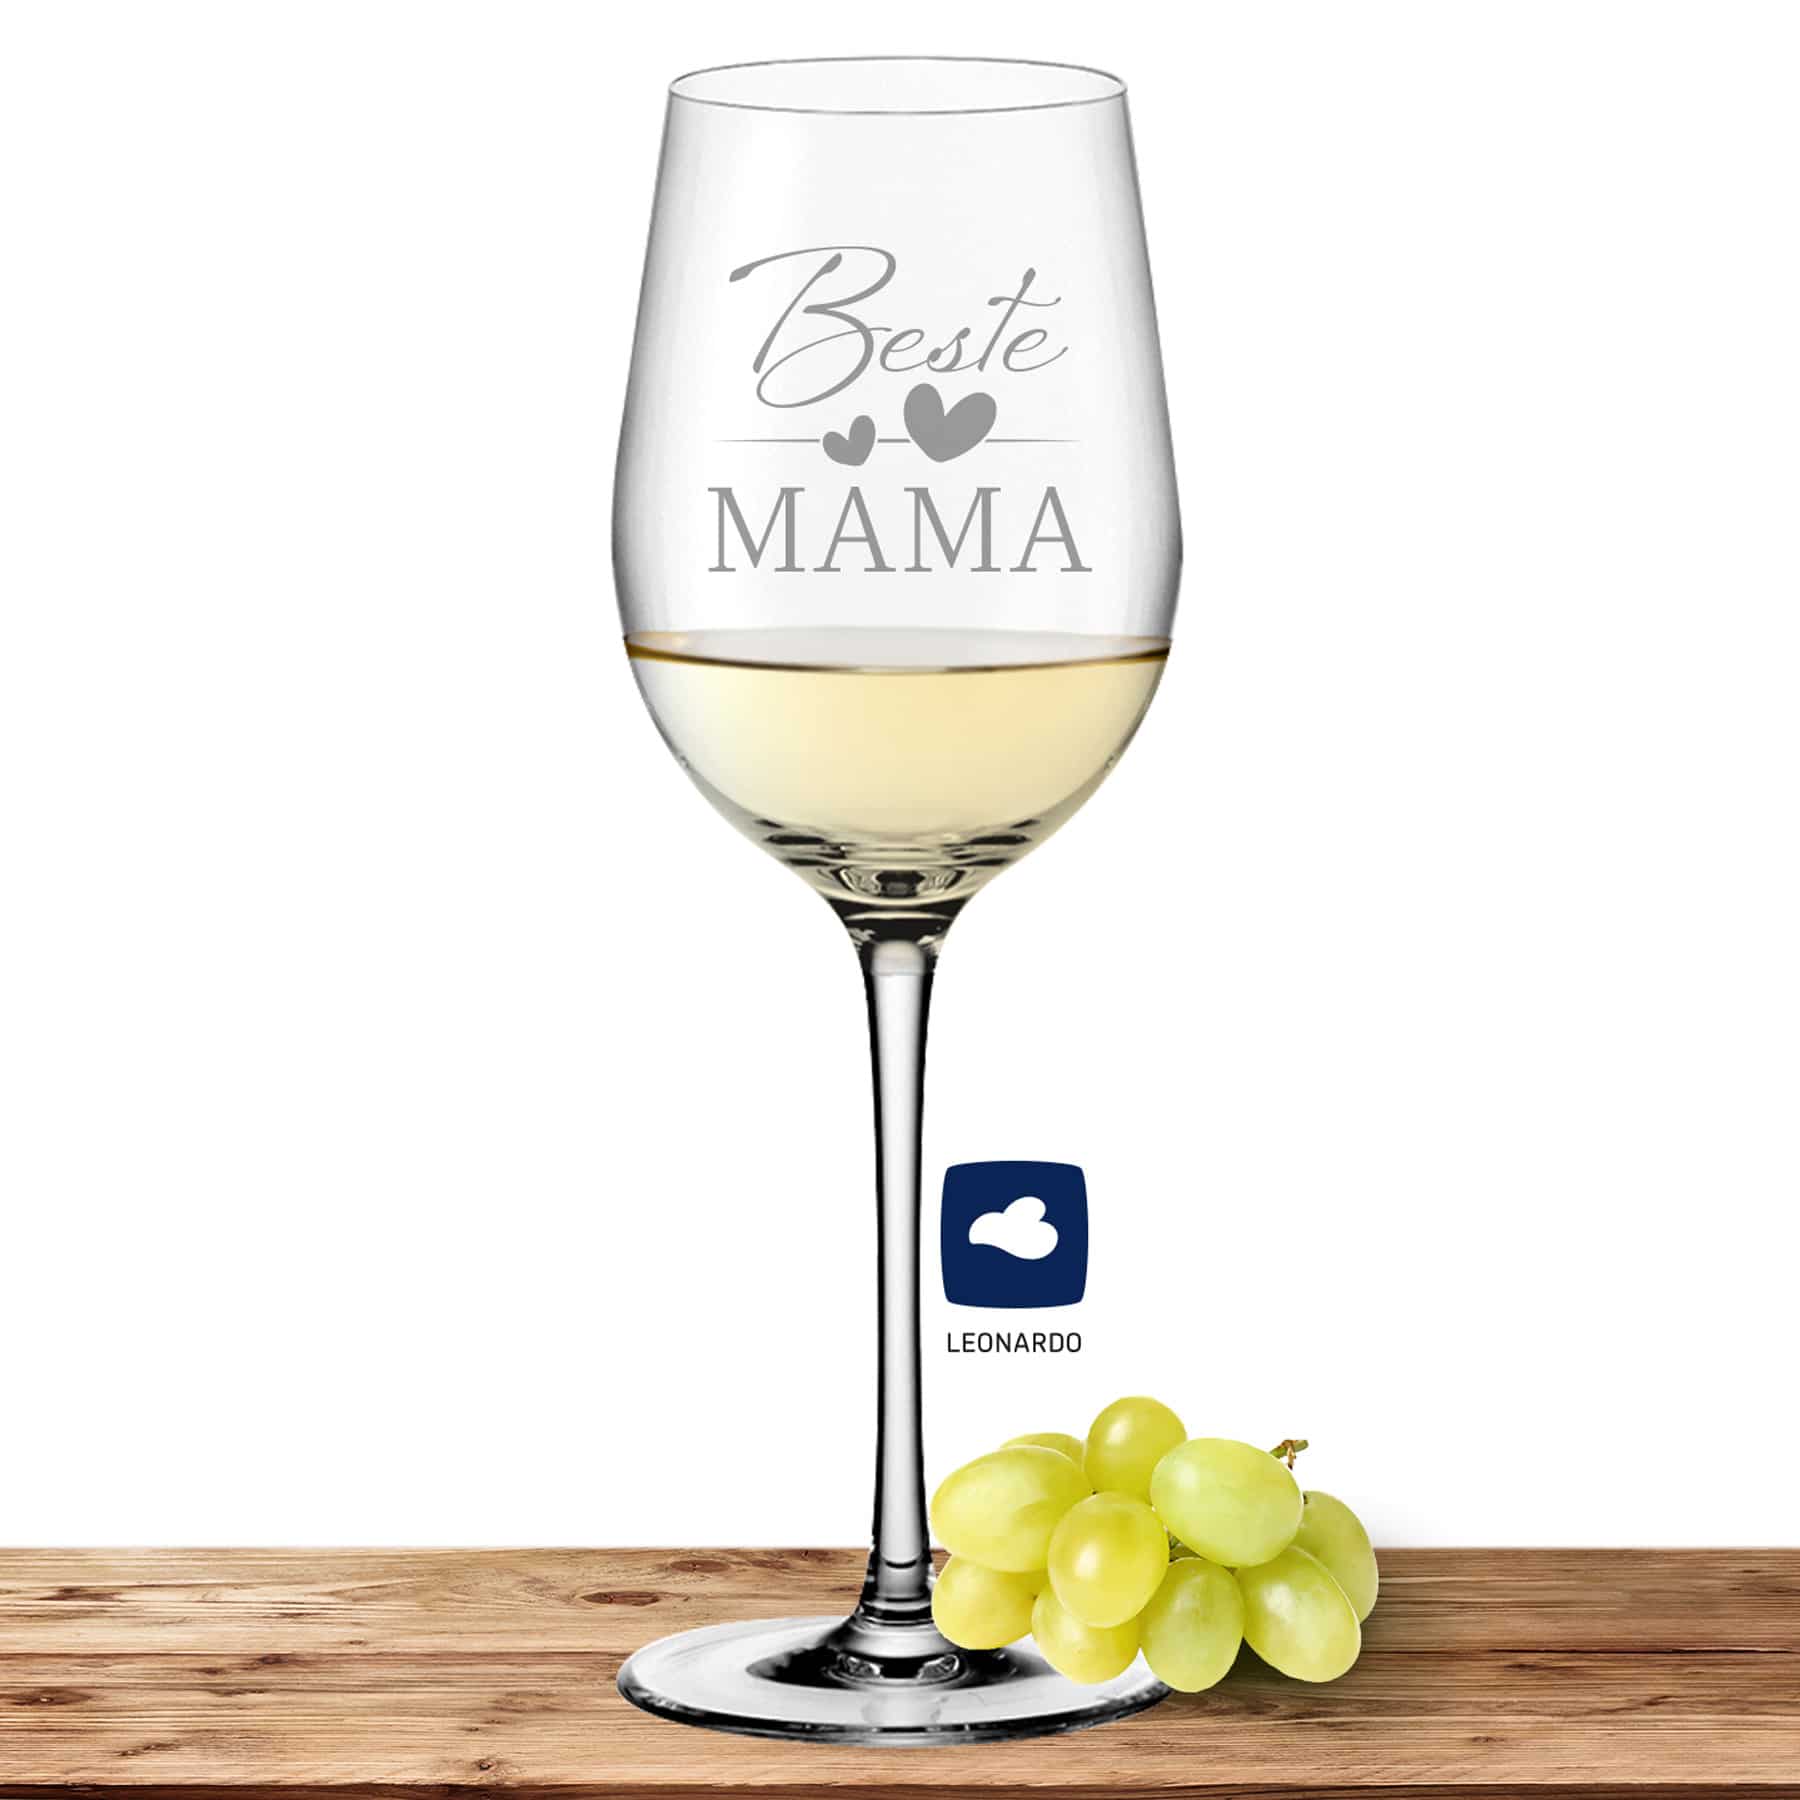 Leonardo Weißweinglas 370ml Ciao+ mit Motiv "Beste Mama"